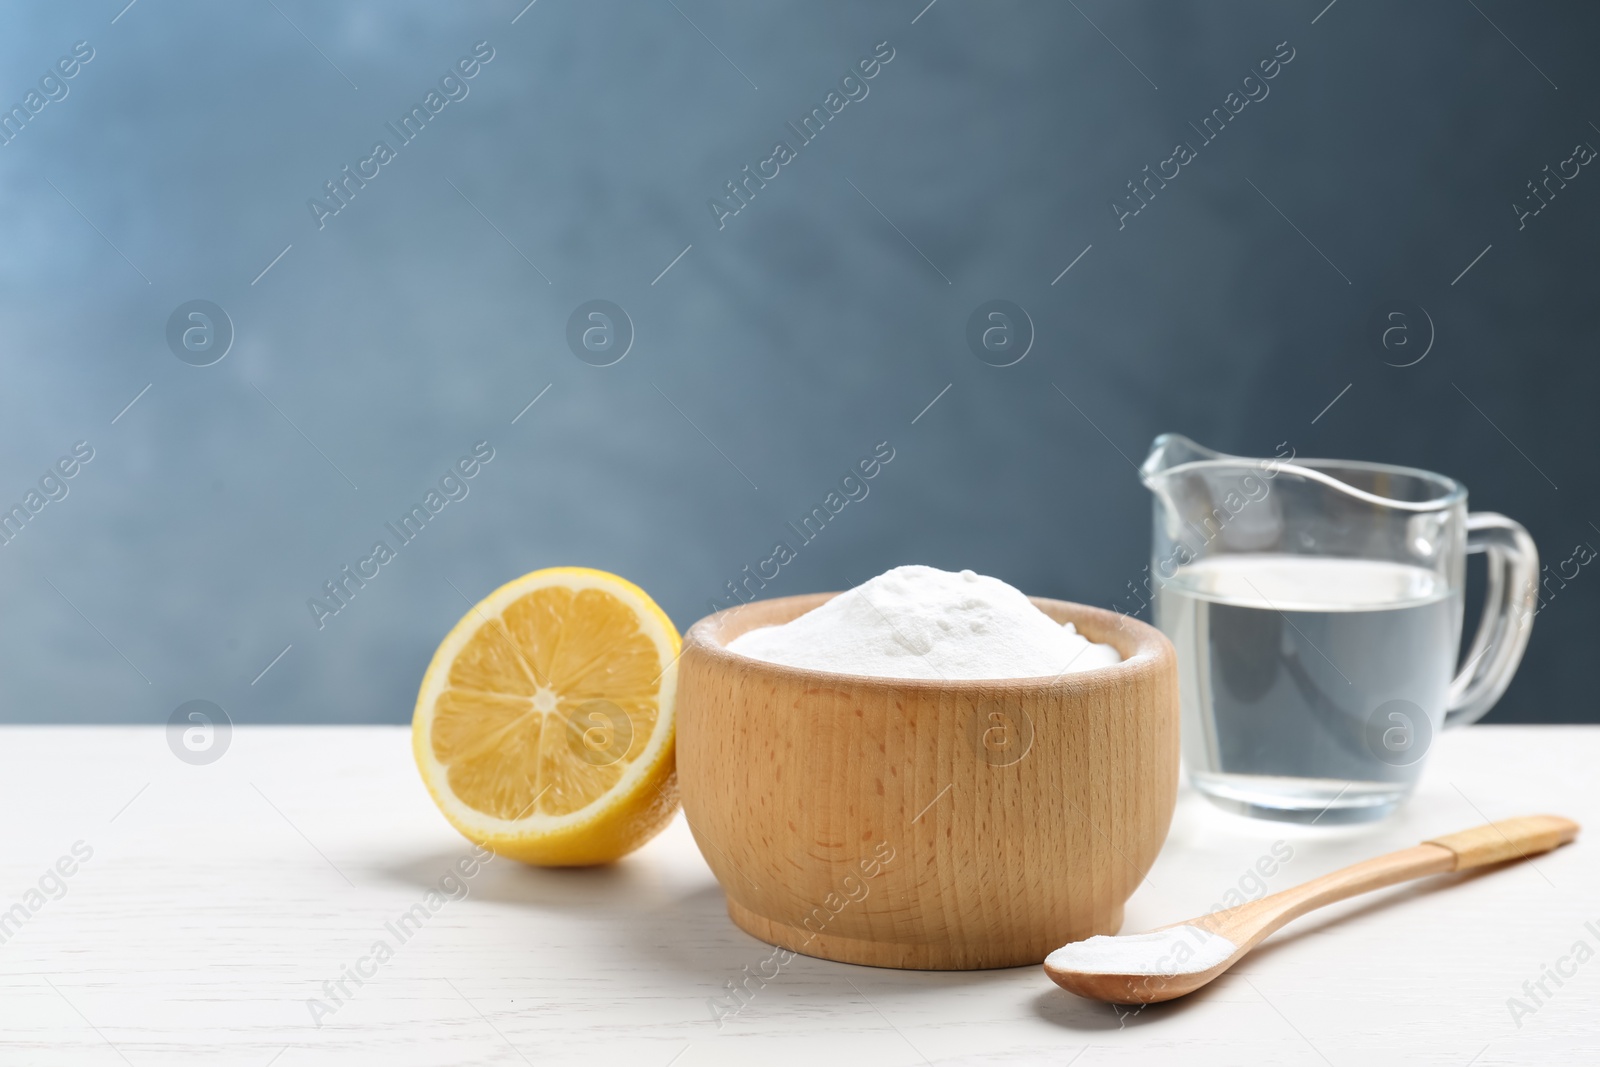 Photo of Baking soda, cut lemon and vinegar on white wooden table